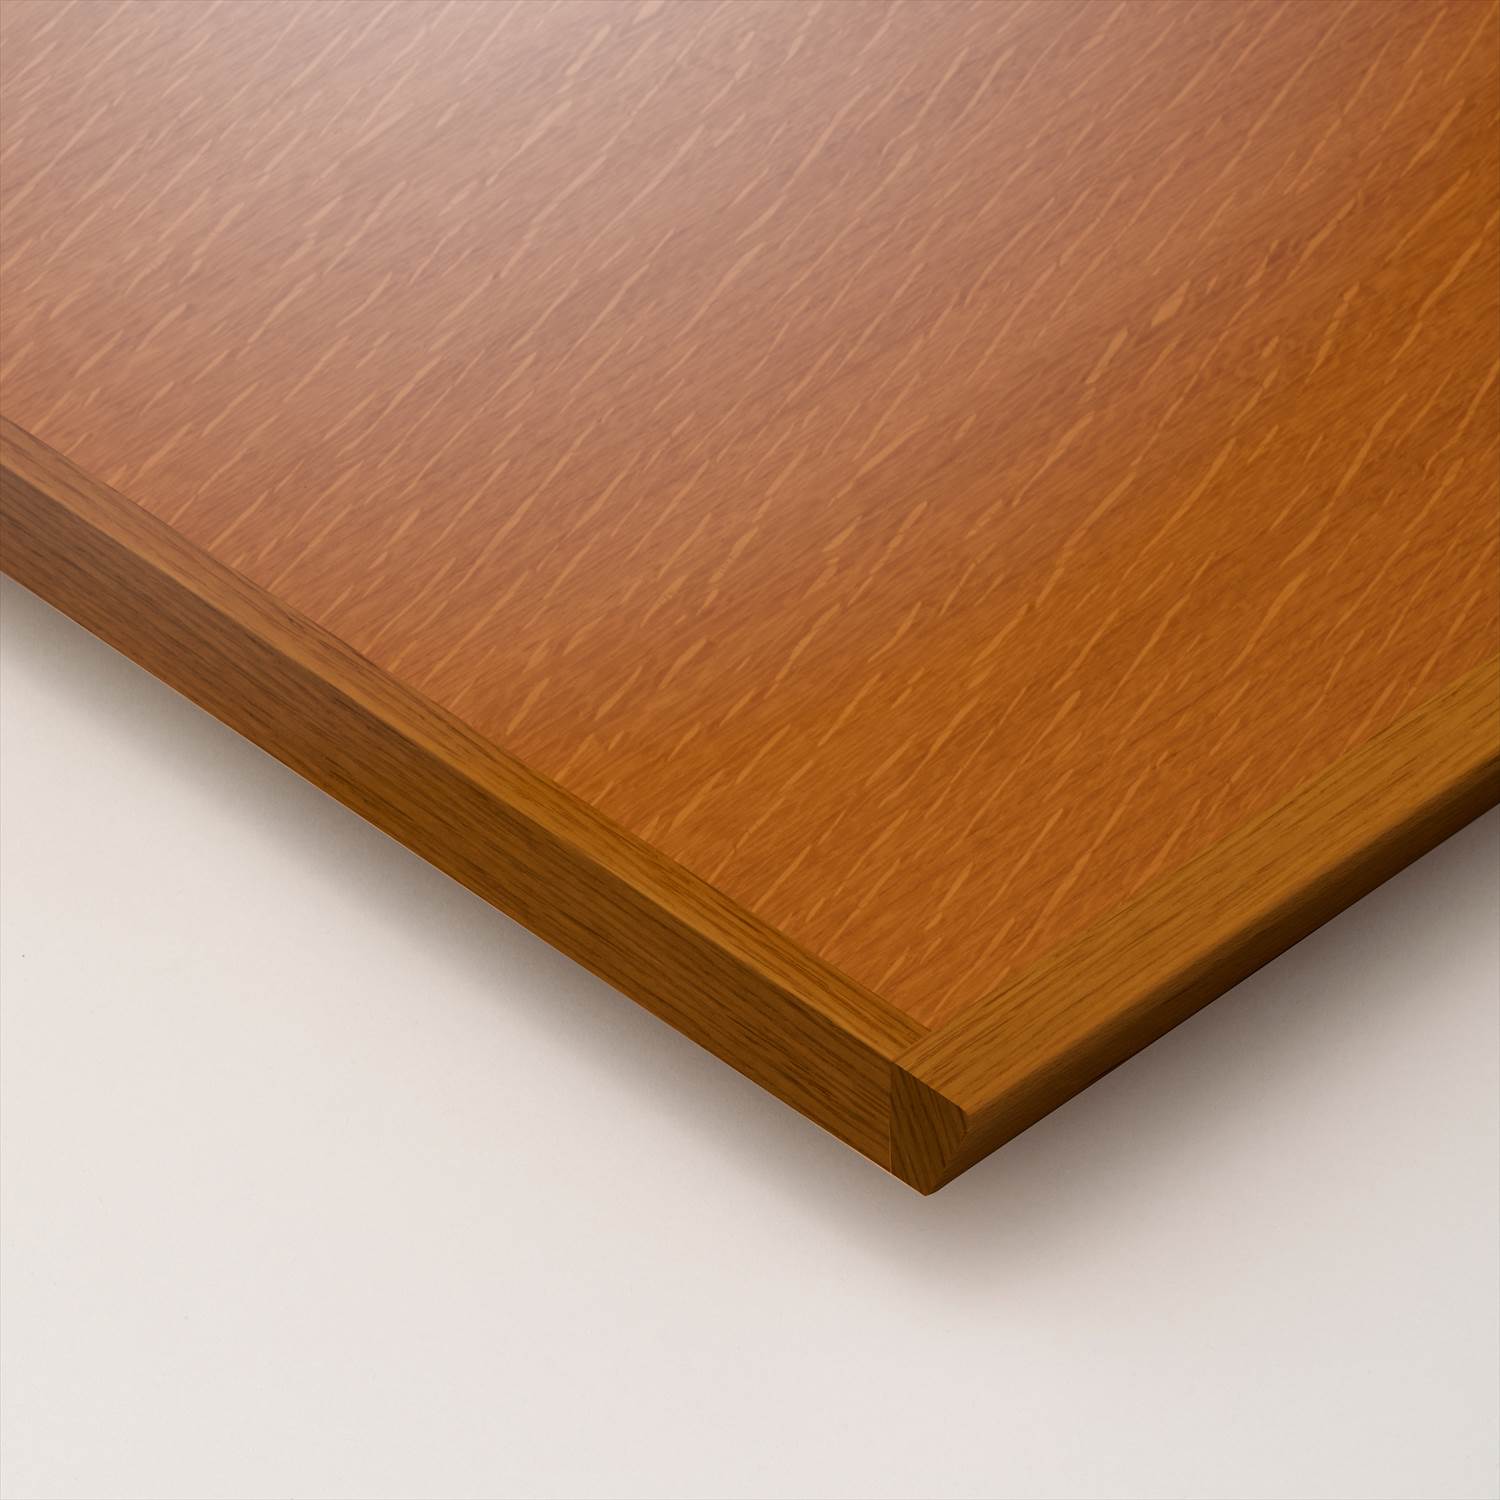 25721円 評価 テーブル天板 天然木 オーク柾目突板 船底型木ブチ付き T-0058 W1200×D600×t30